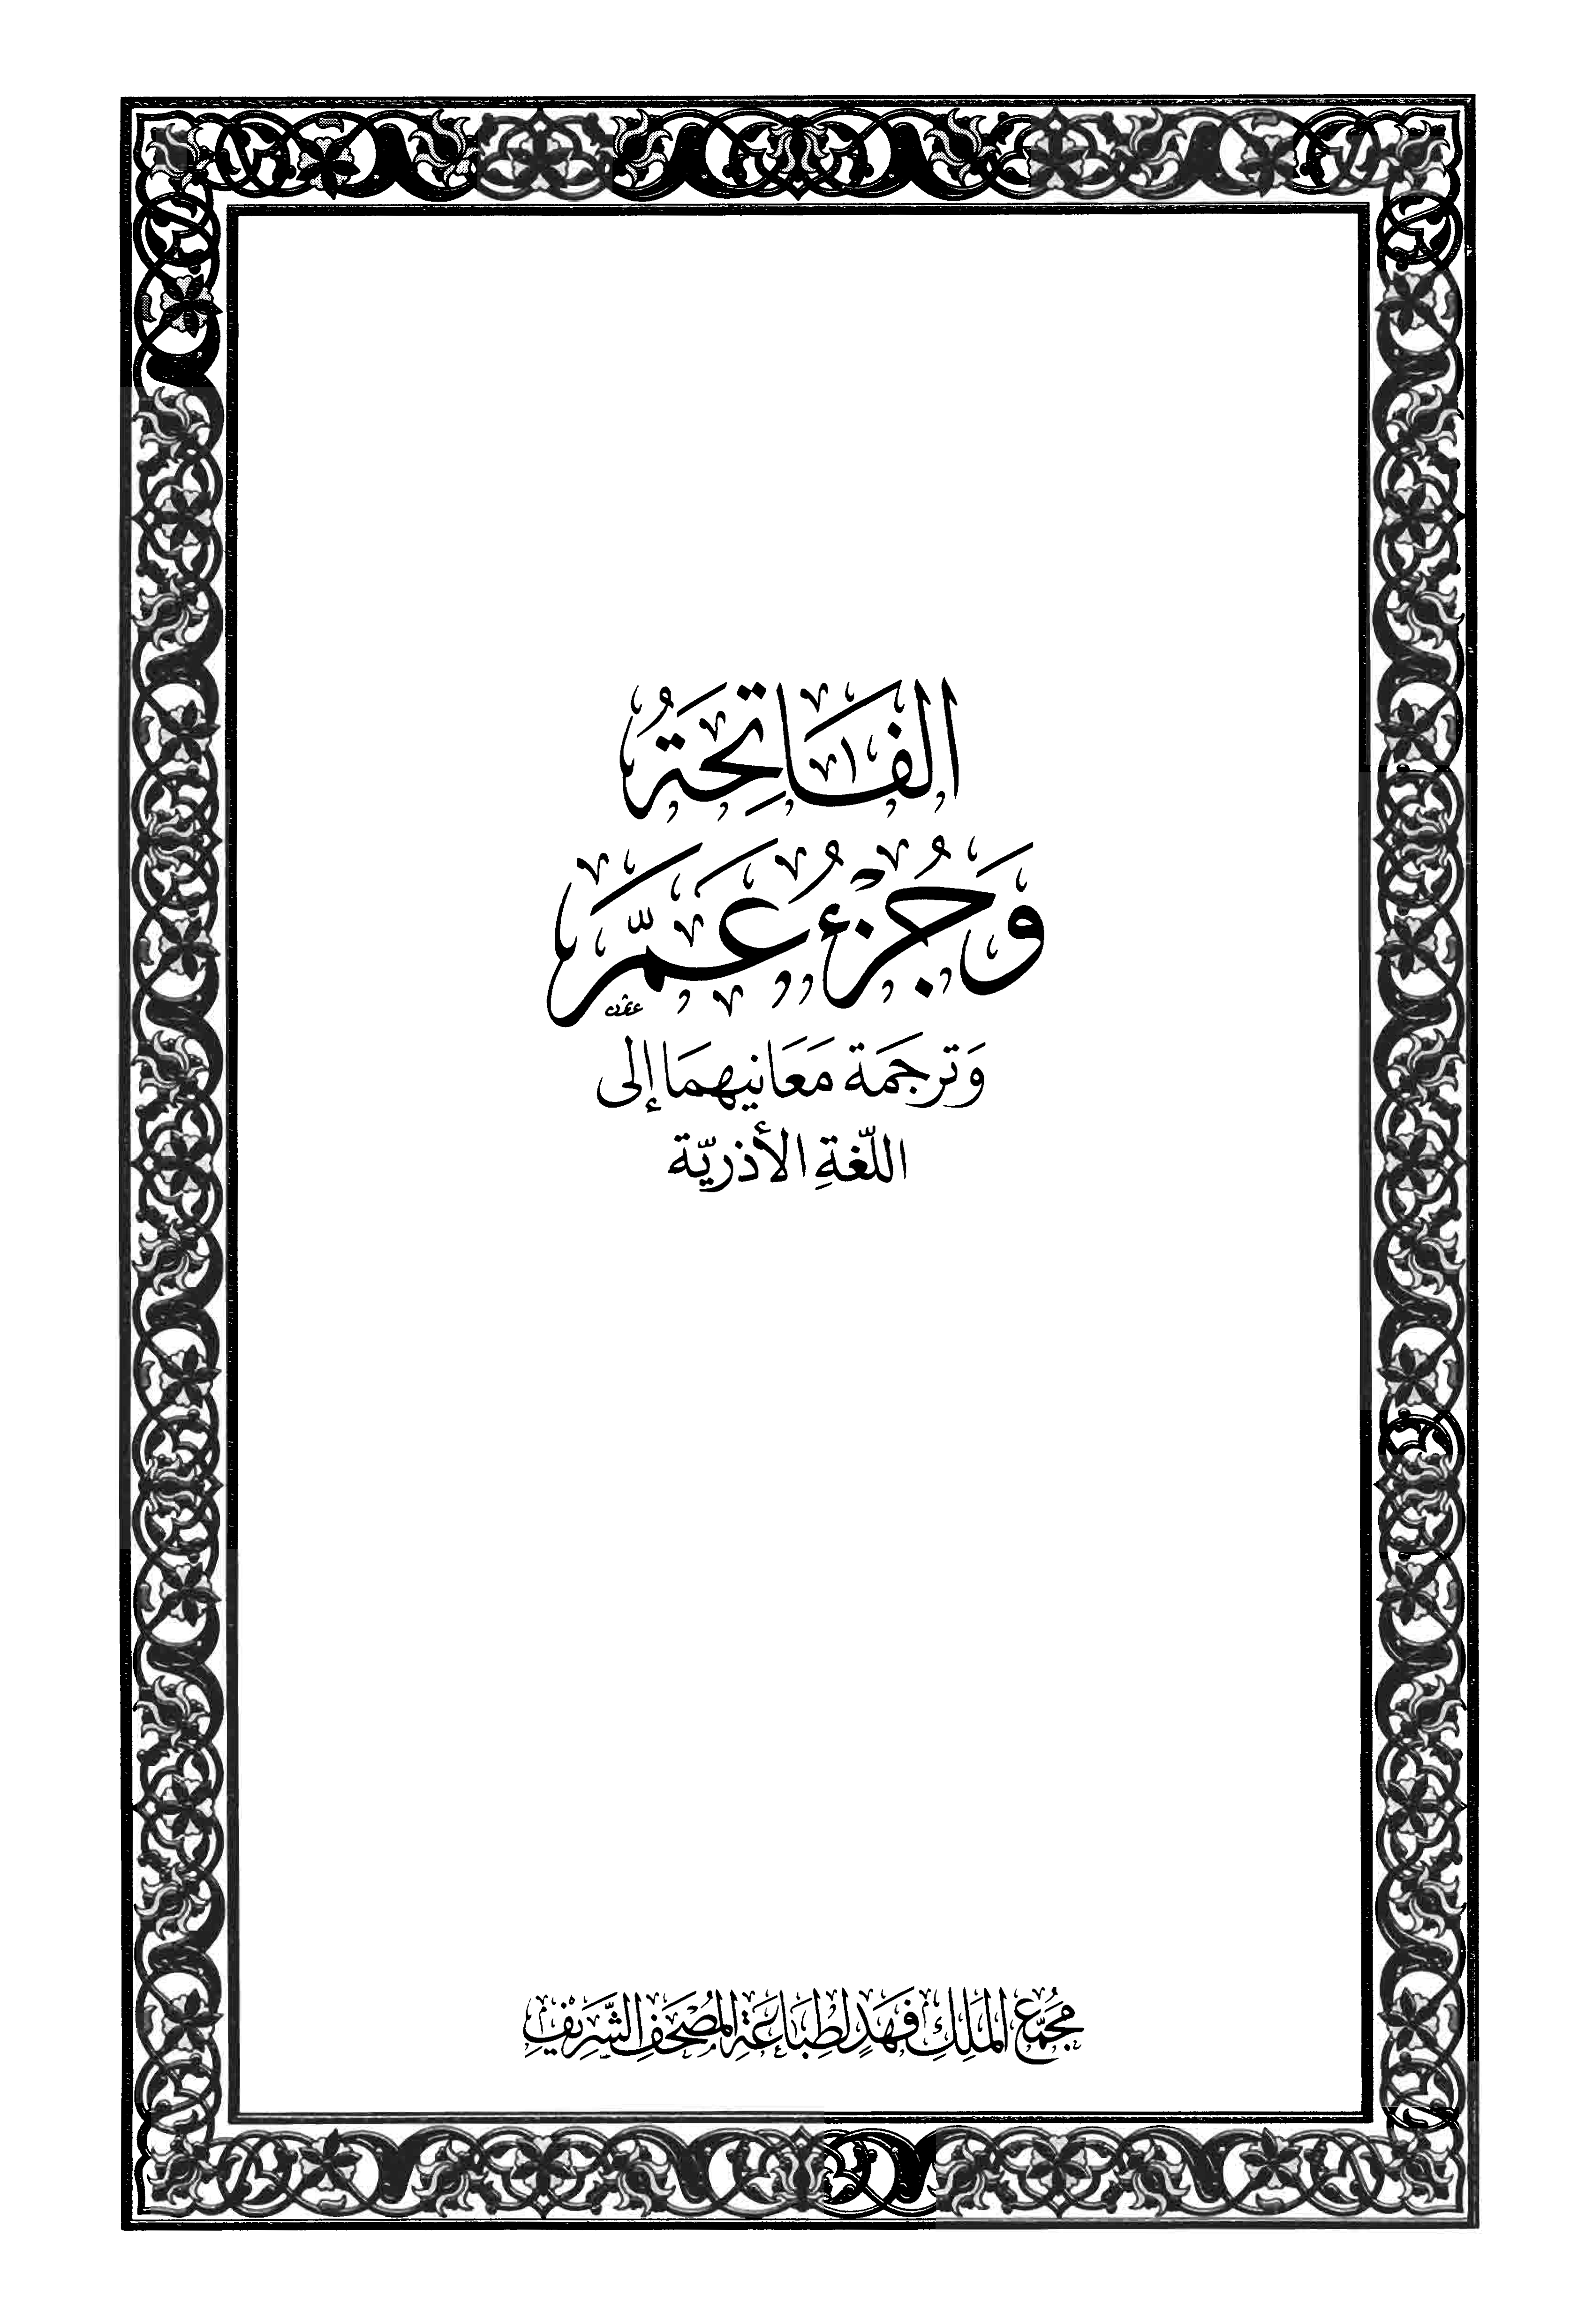 تحميل كتاب الفاتحة وجزء عم وترجمة معانيهما إلى اللغة الأذرية